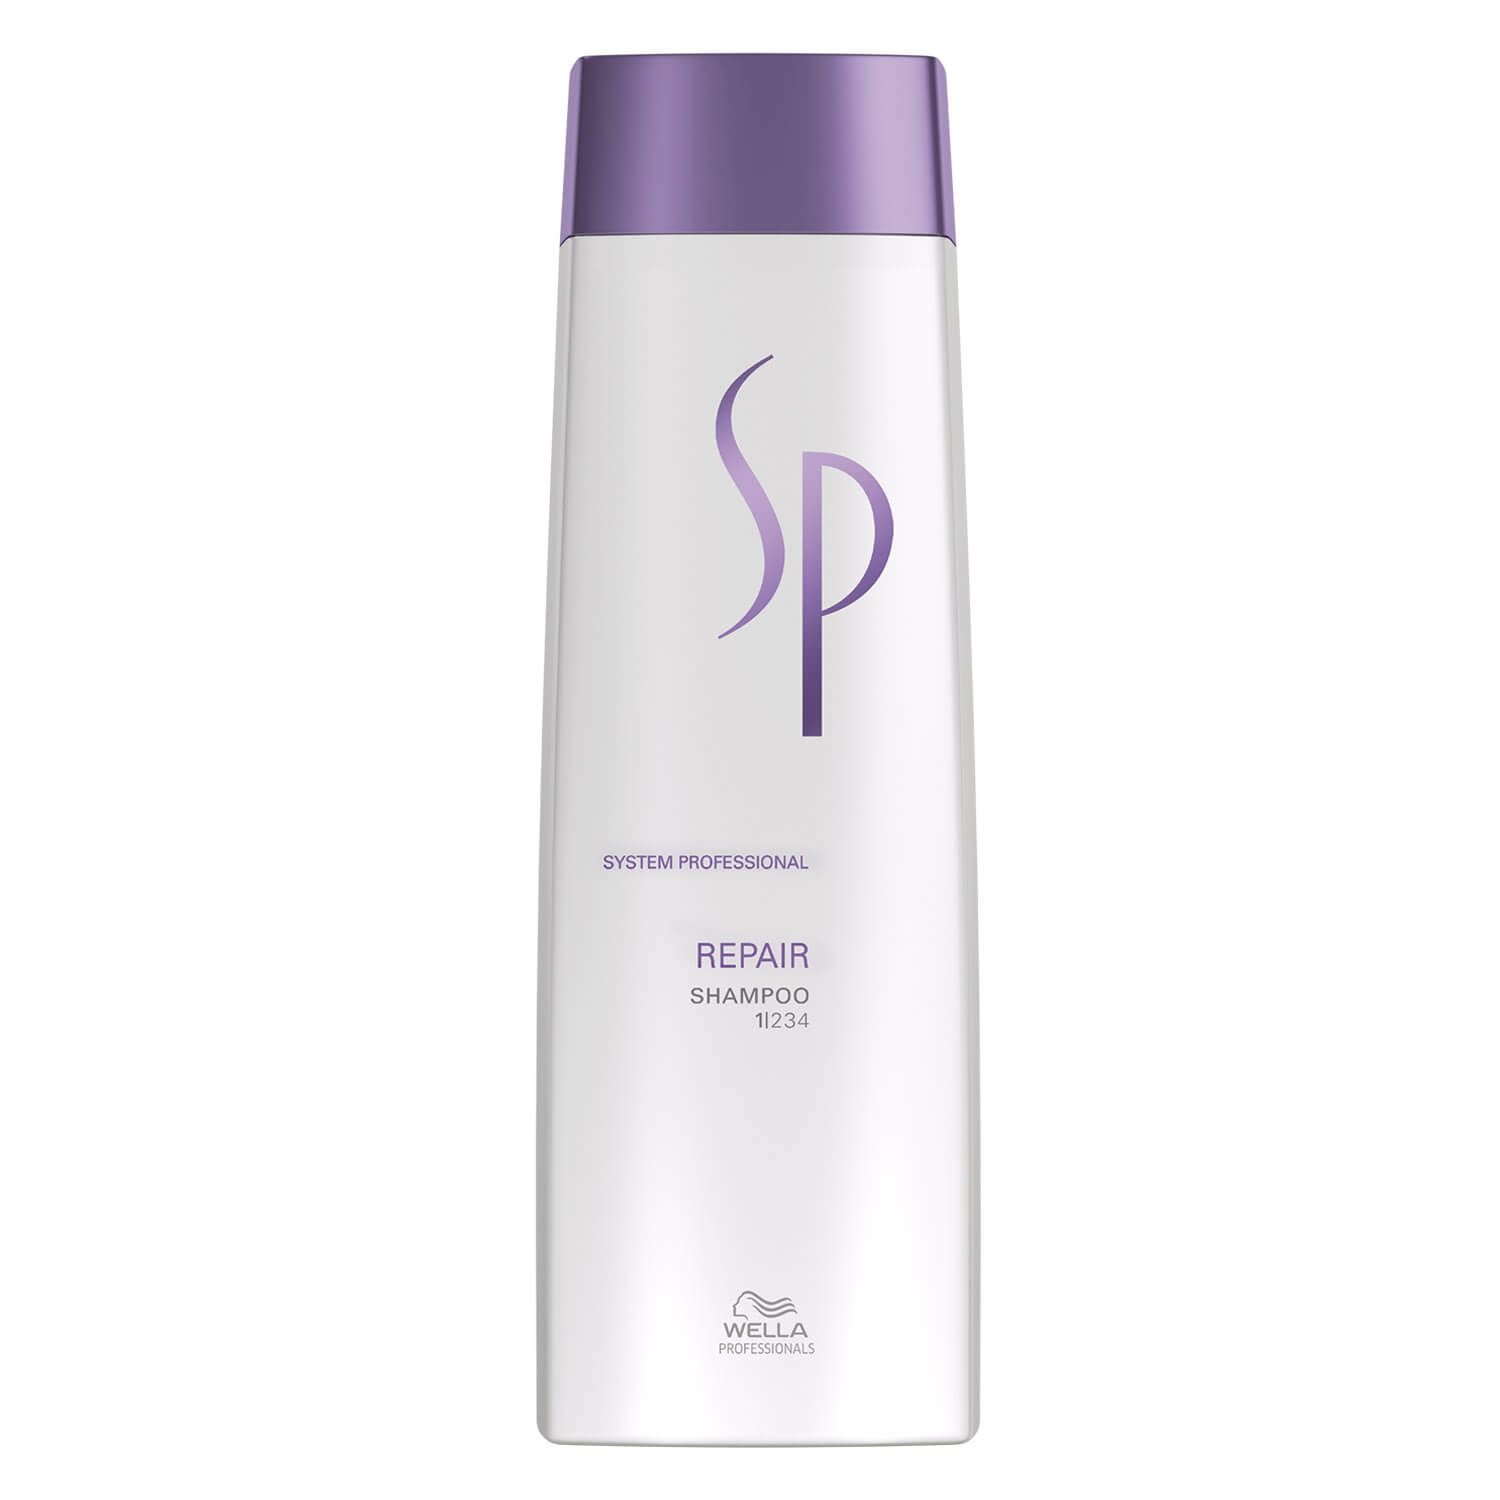 Produktbild von SP Repair - Shampoo